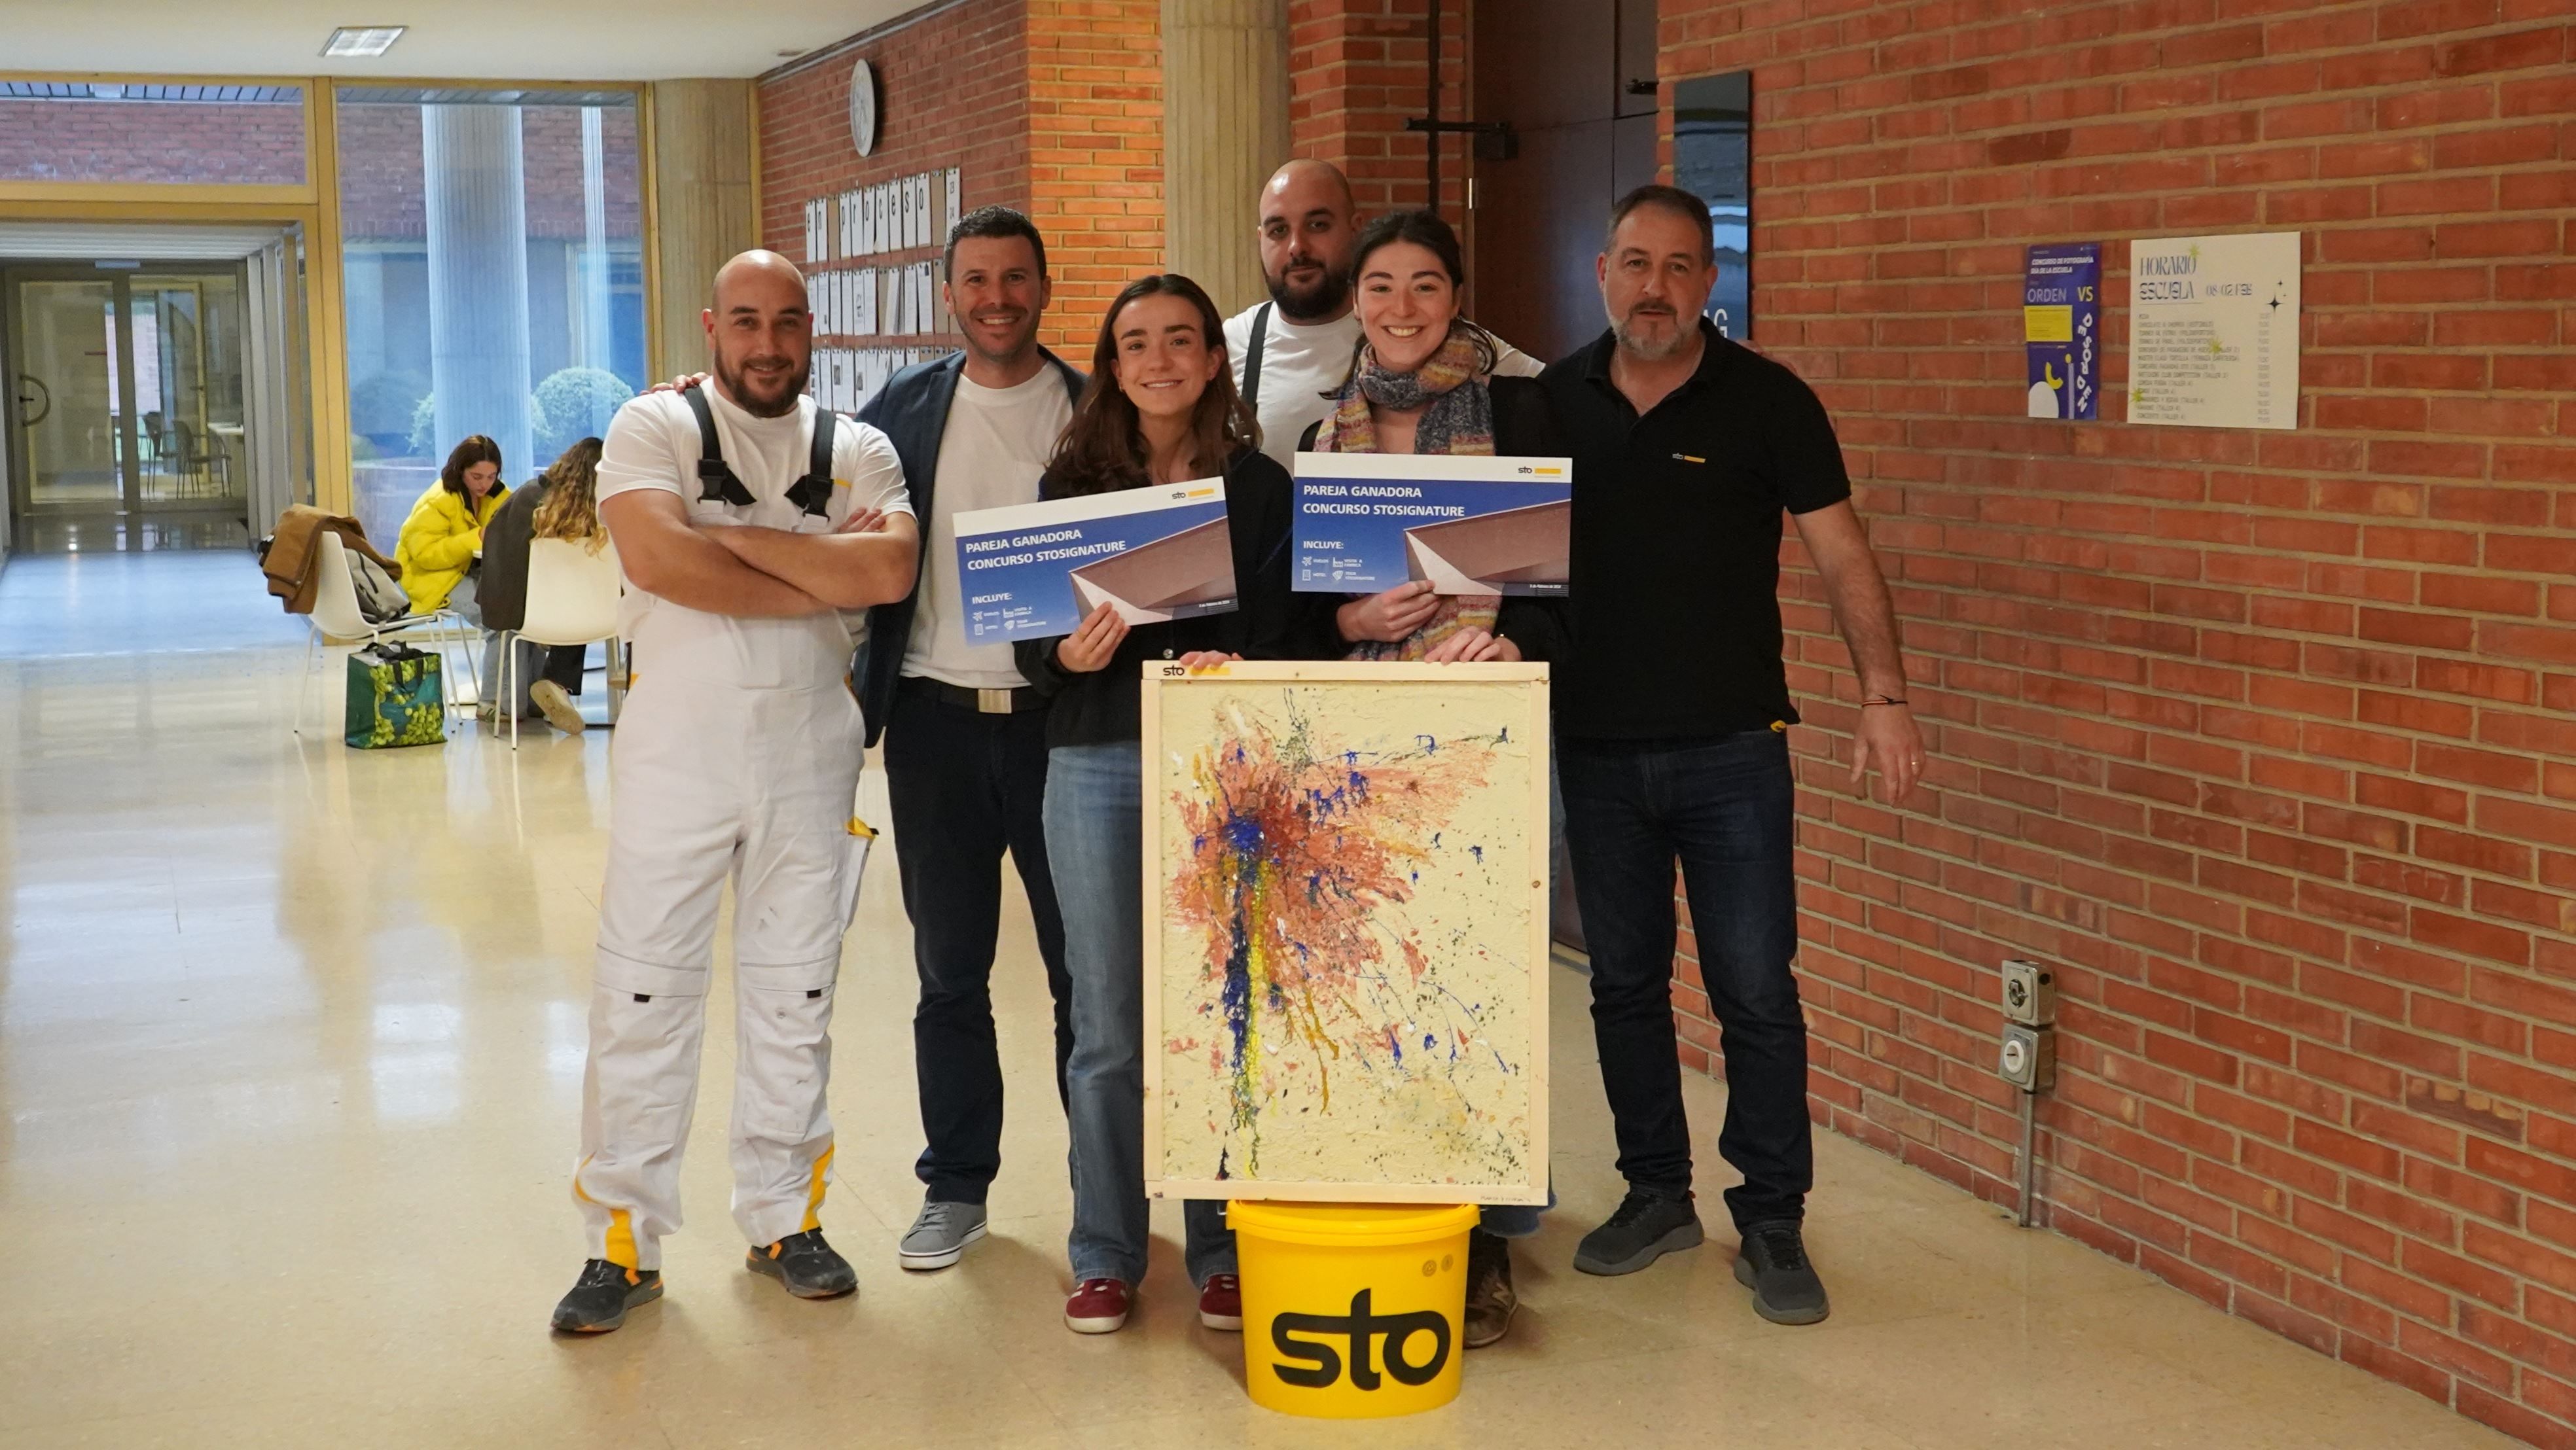 Sto Ibérica impulsa la creatividad entre los alumnos de la Escuela de Arquitectura de la Universidad de Navarra